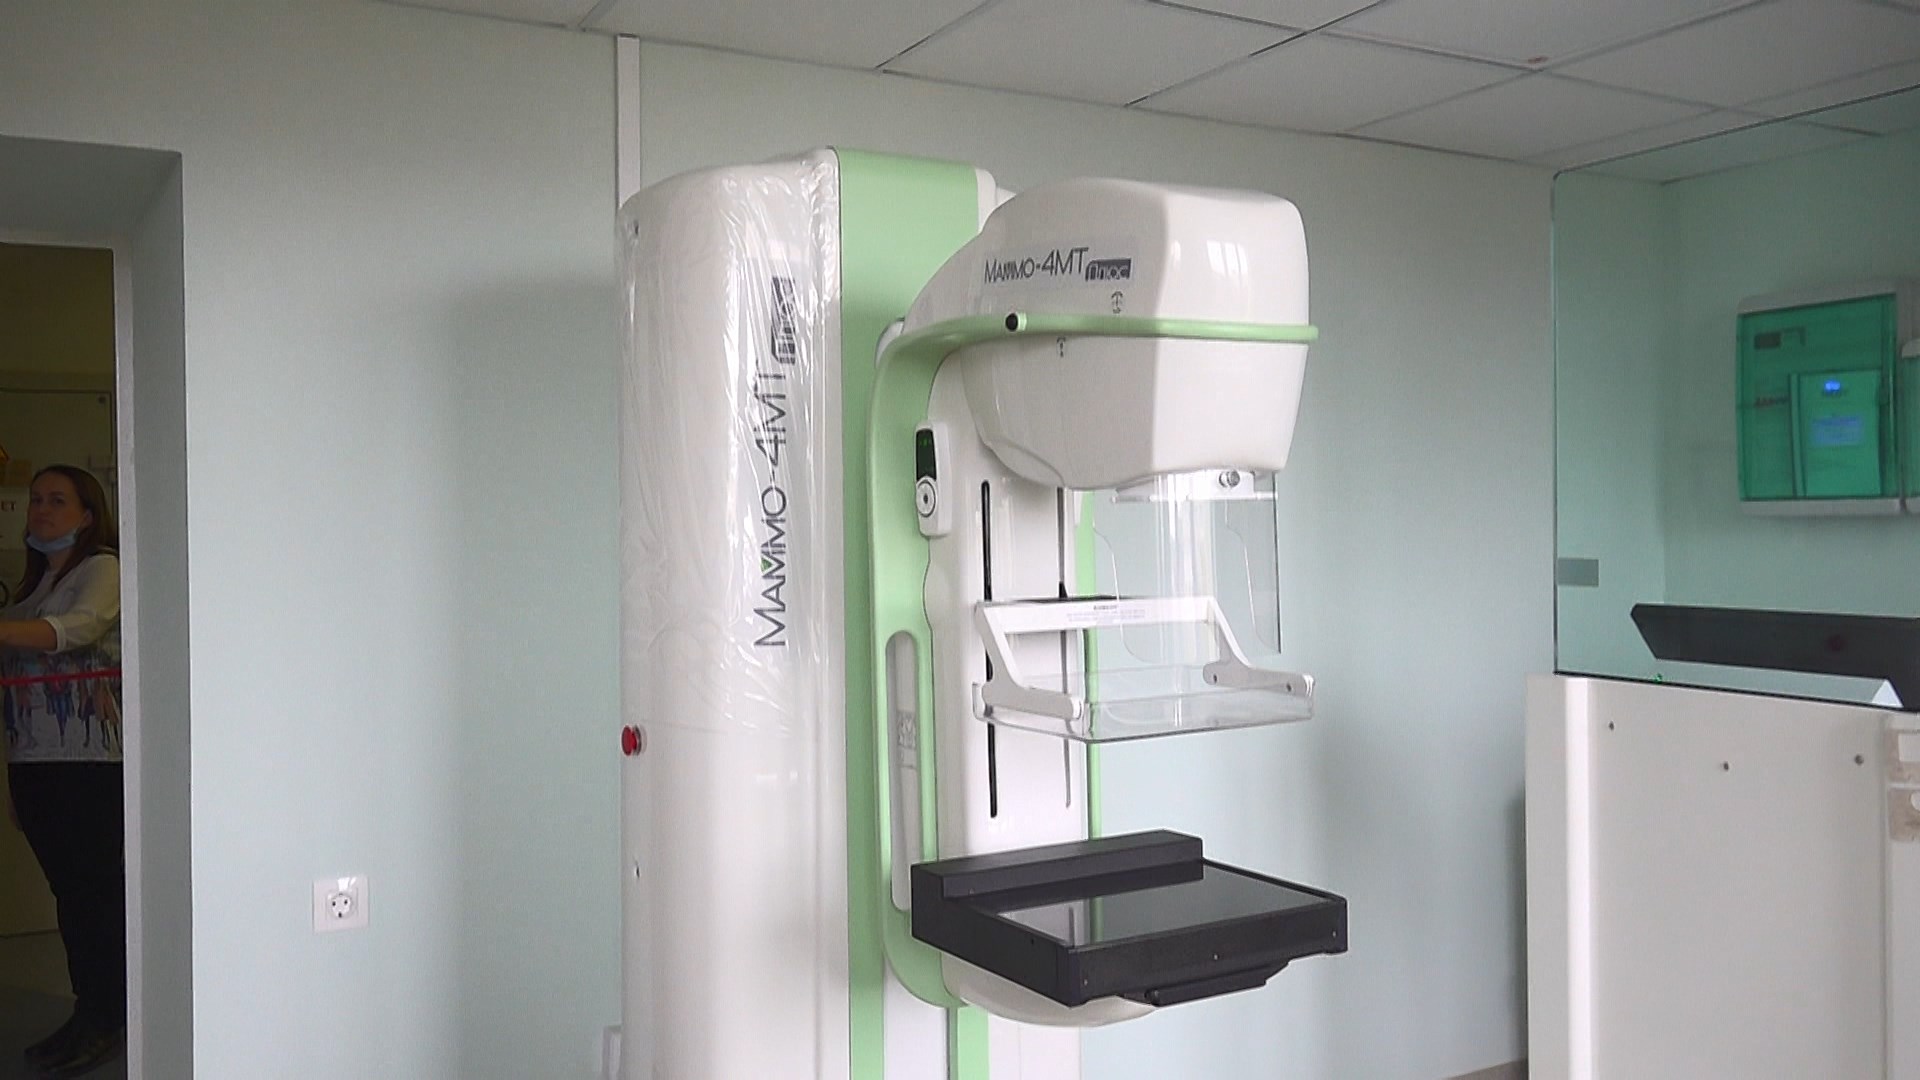 MX 600 маммограф. Современный маммографический аппарат. Кабинеты с установленным аппаратом маммограф. Аппарат Поликом. Морг ул махова 14 в раменском